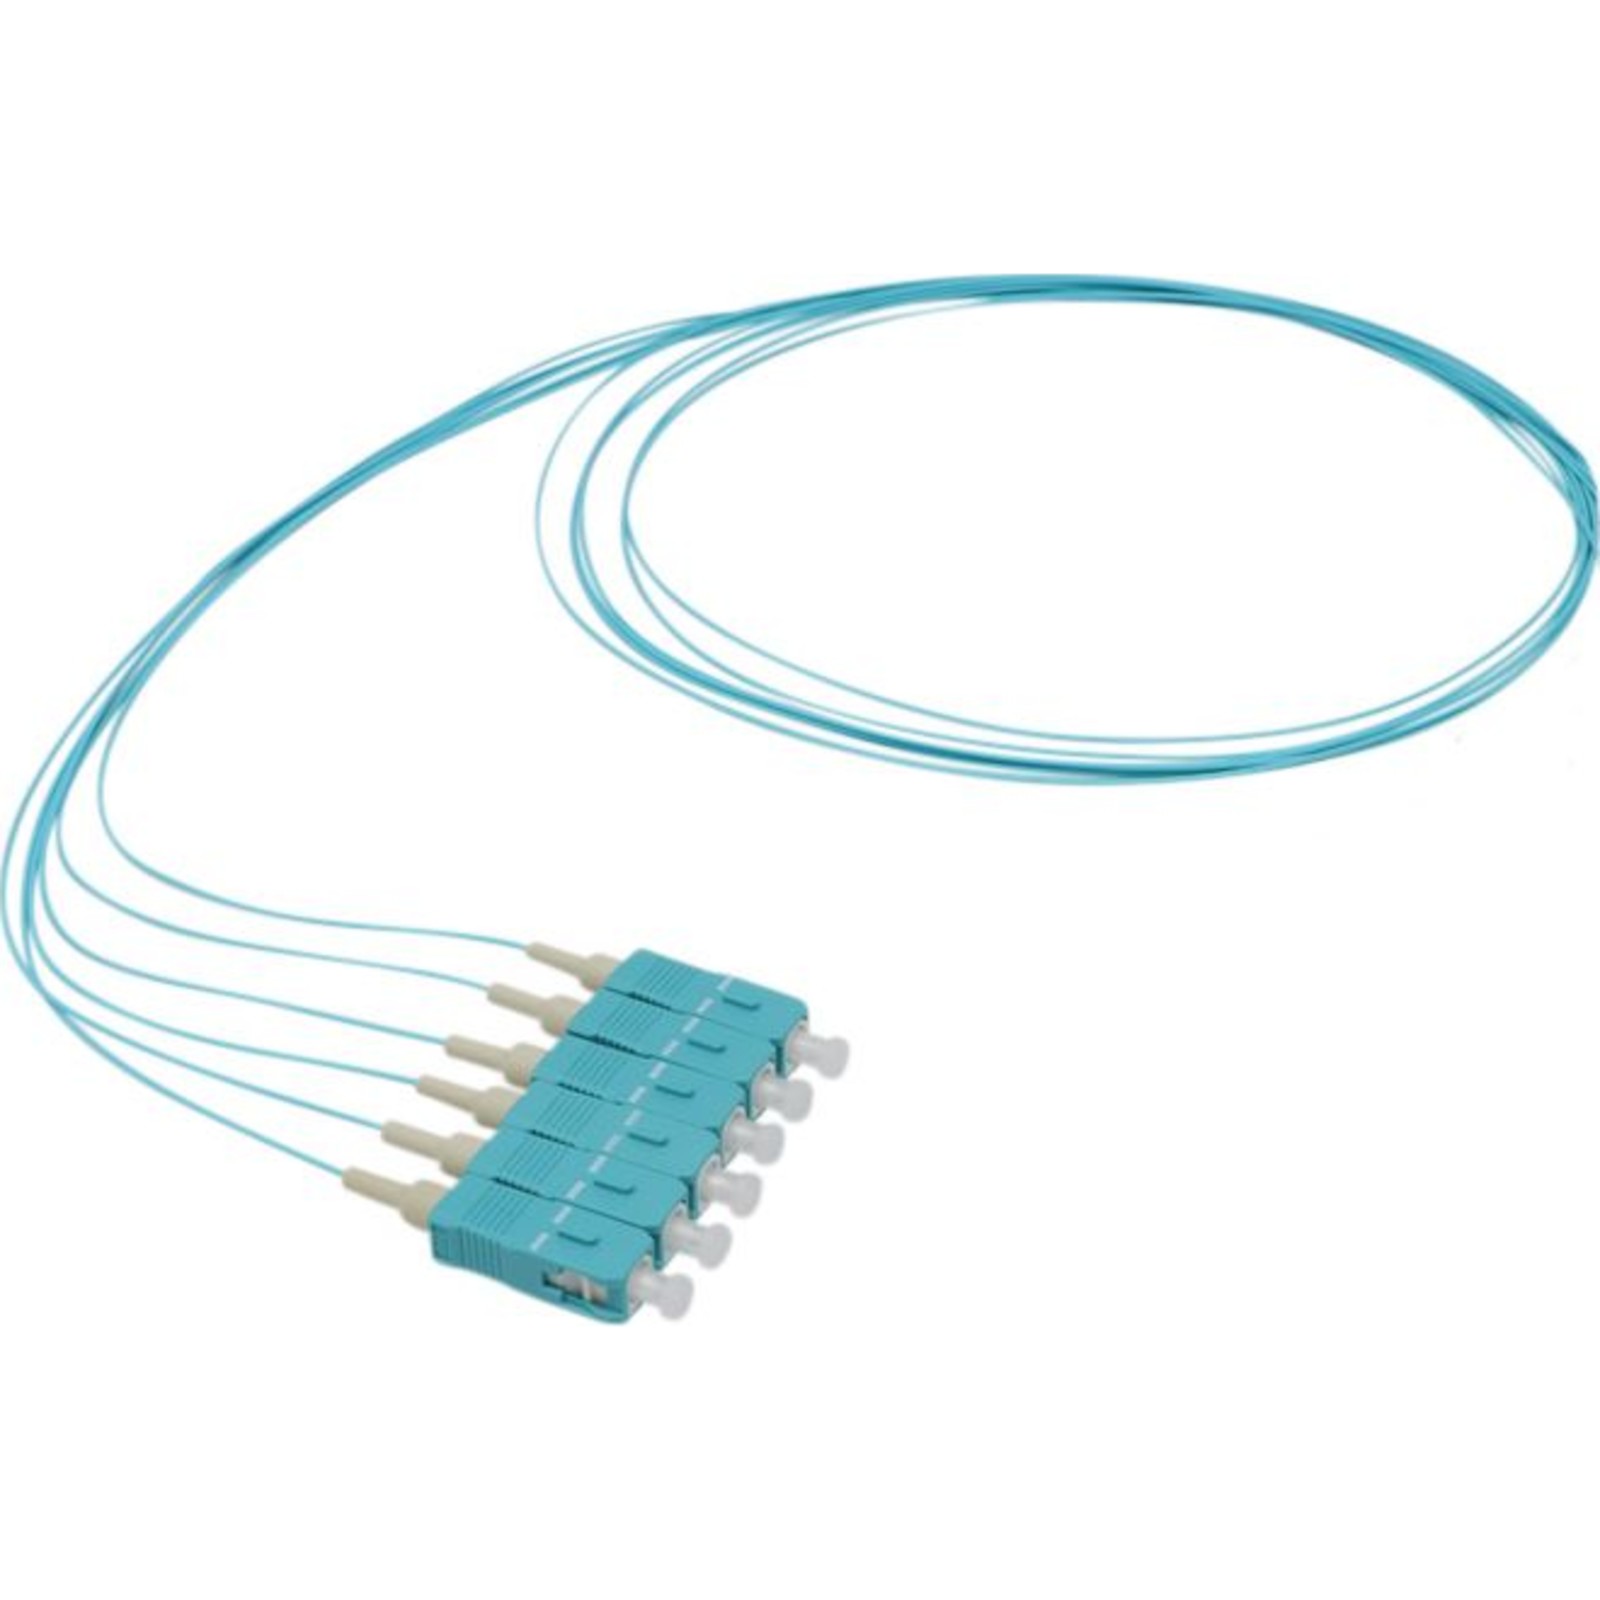 Pigtail fibre Enbeam OM3 50 125 SC UPC turquoise paquet de 12- 1m